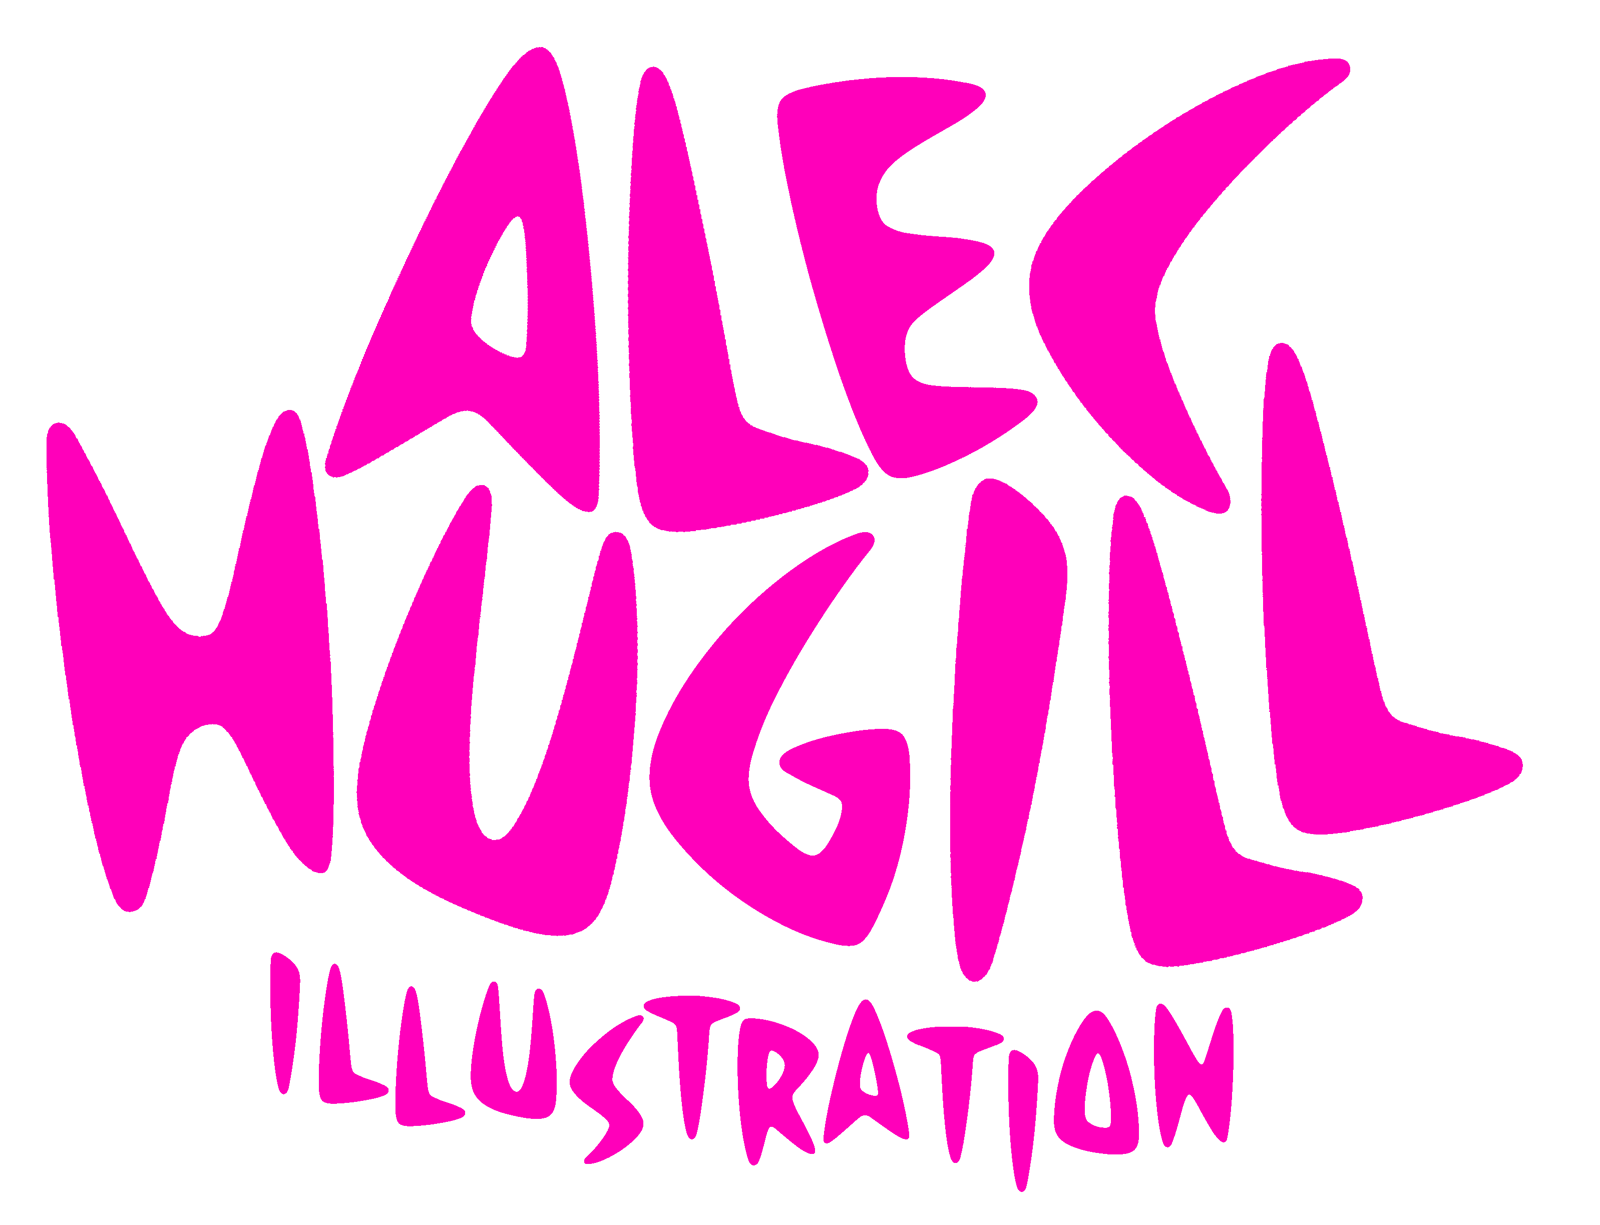 Alec Hugill